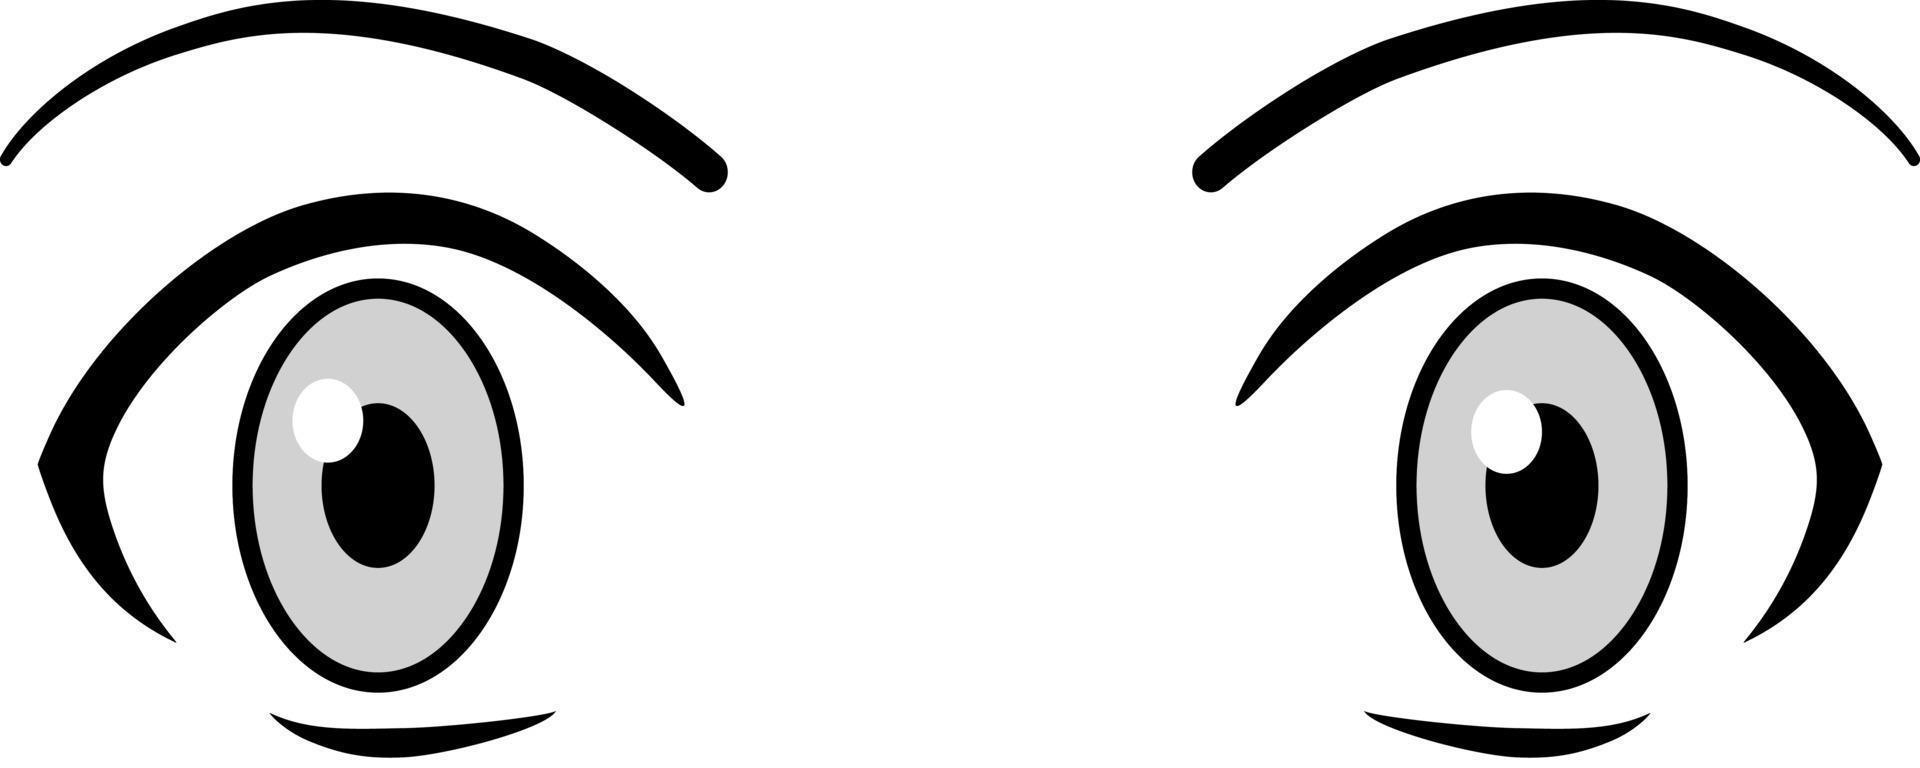 colección de ojos boho negros sobre fondo blanco. ojos expresivos y cejas  de dibujos animados femeninos